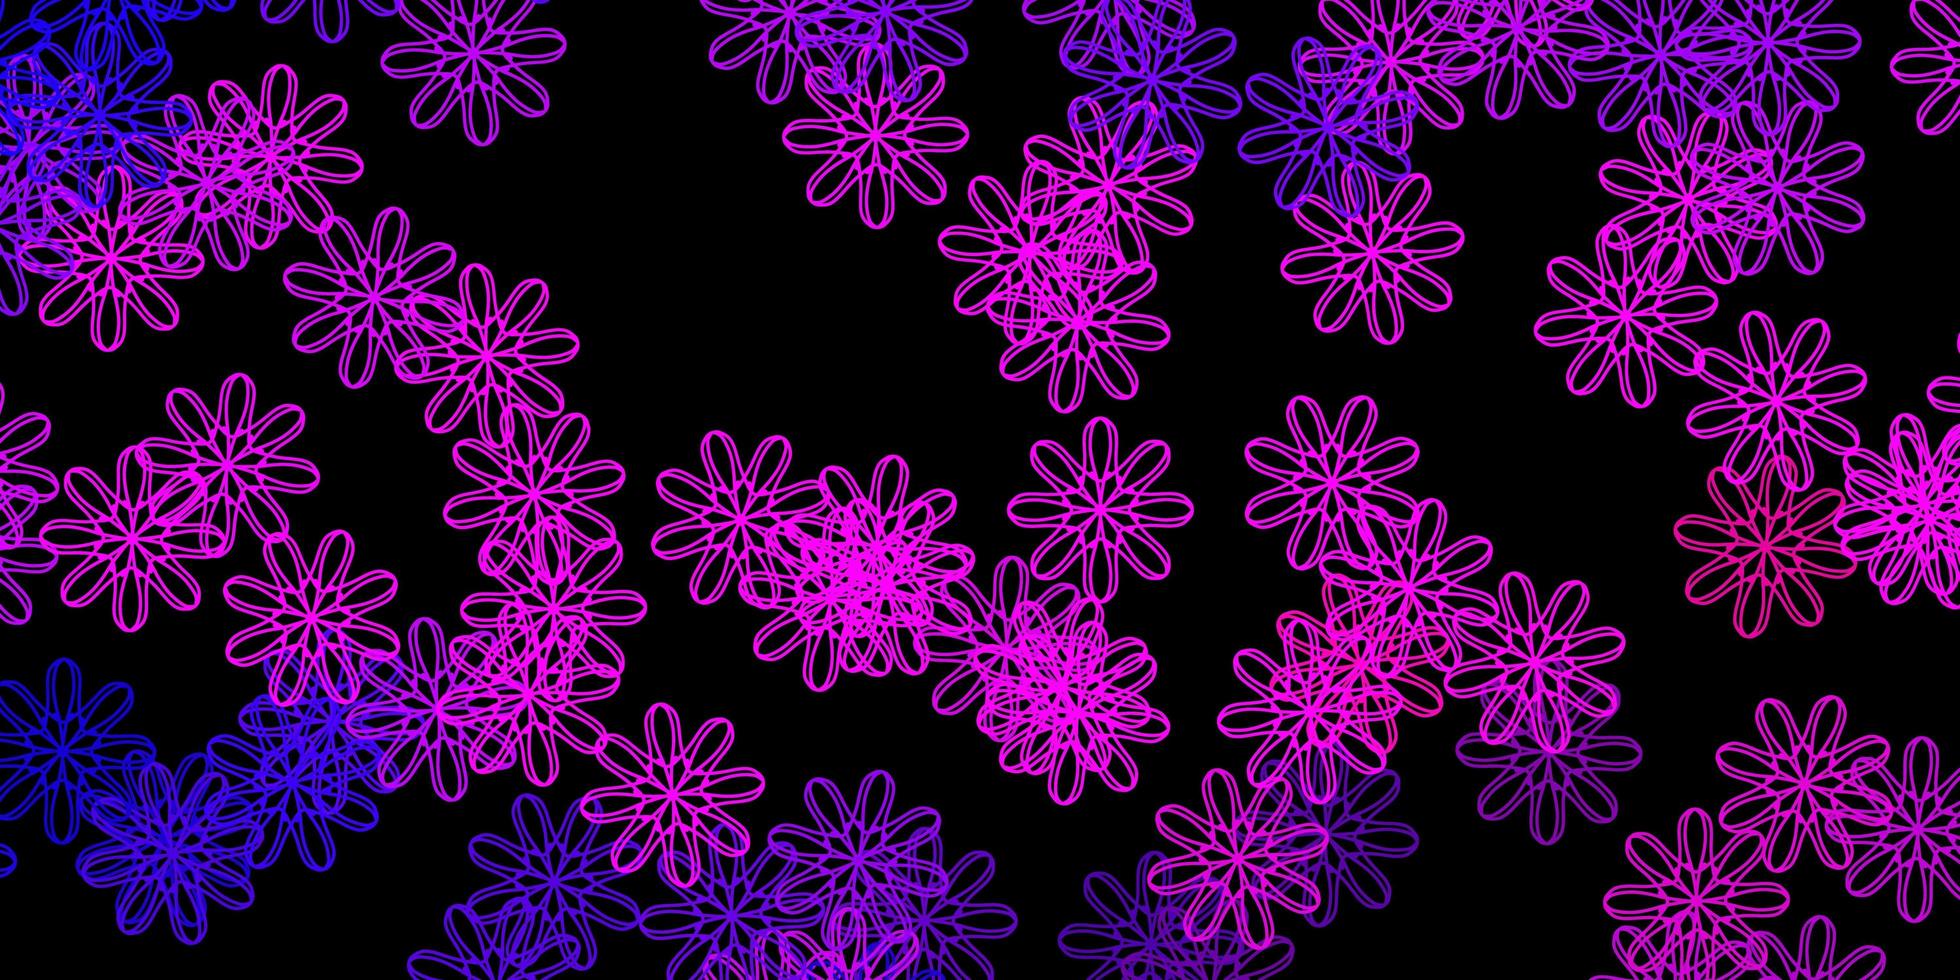 fond de vecteur violet foncé, rose avec des formes aléatoires.